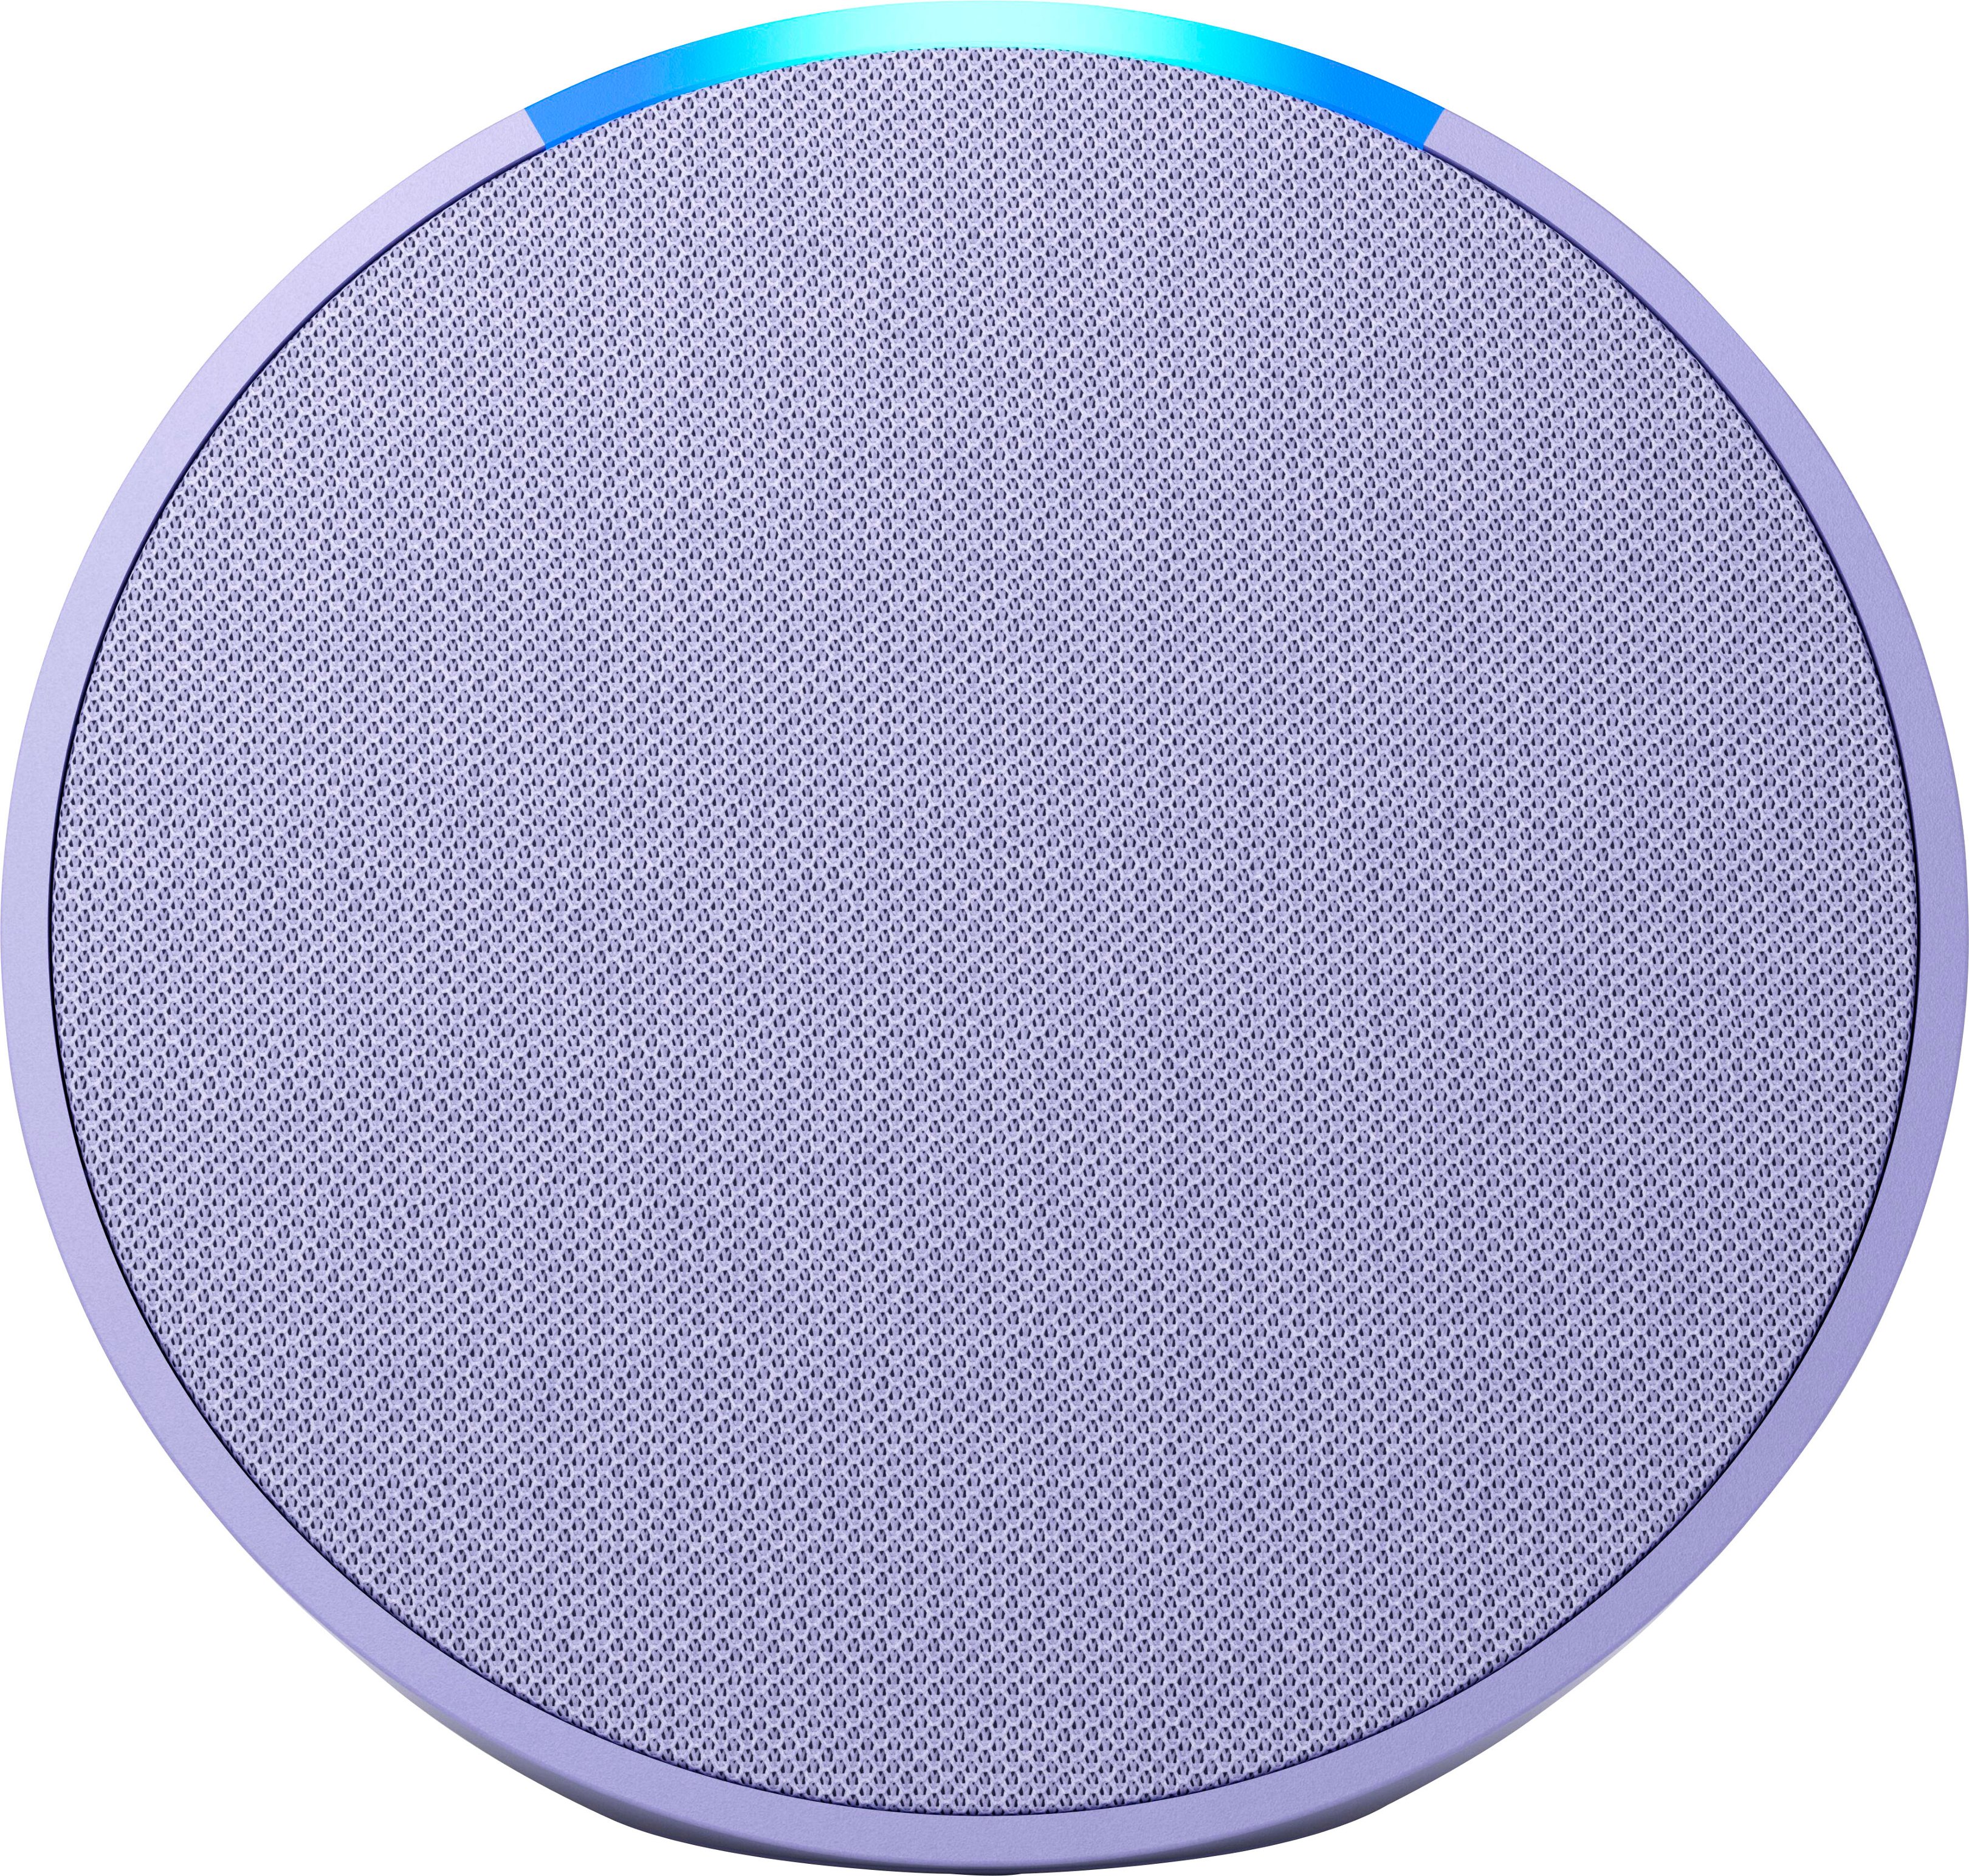 Echo Pop (1st Generation) Smart Speaker with Alexa Lavender Bloom  B09ZXJDSL5 - Best Buy